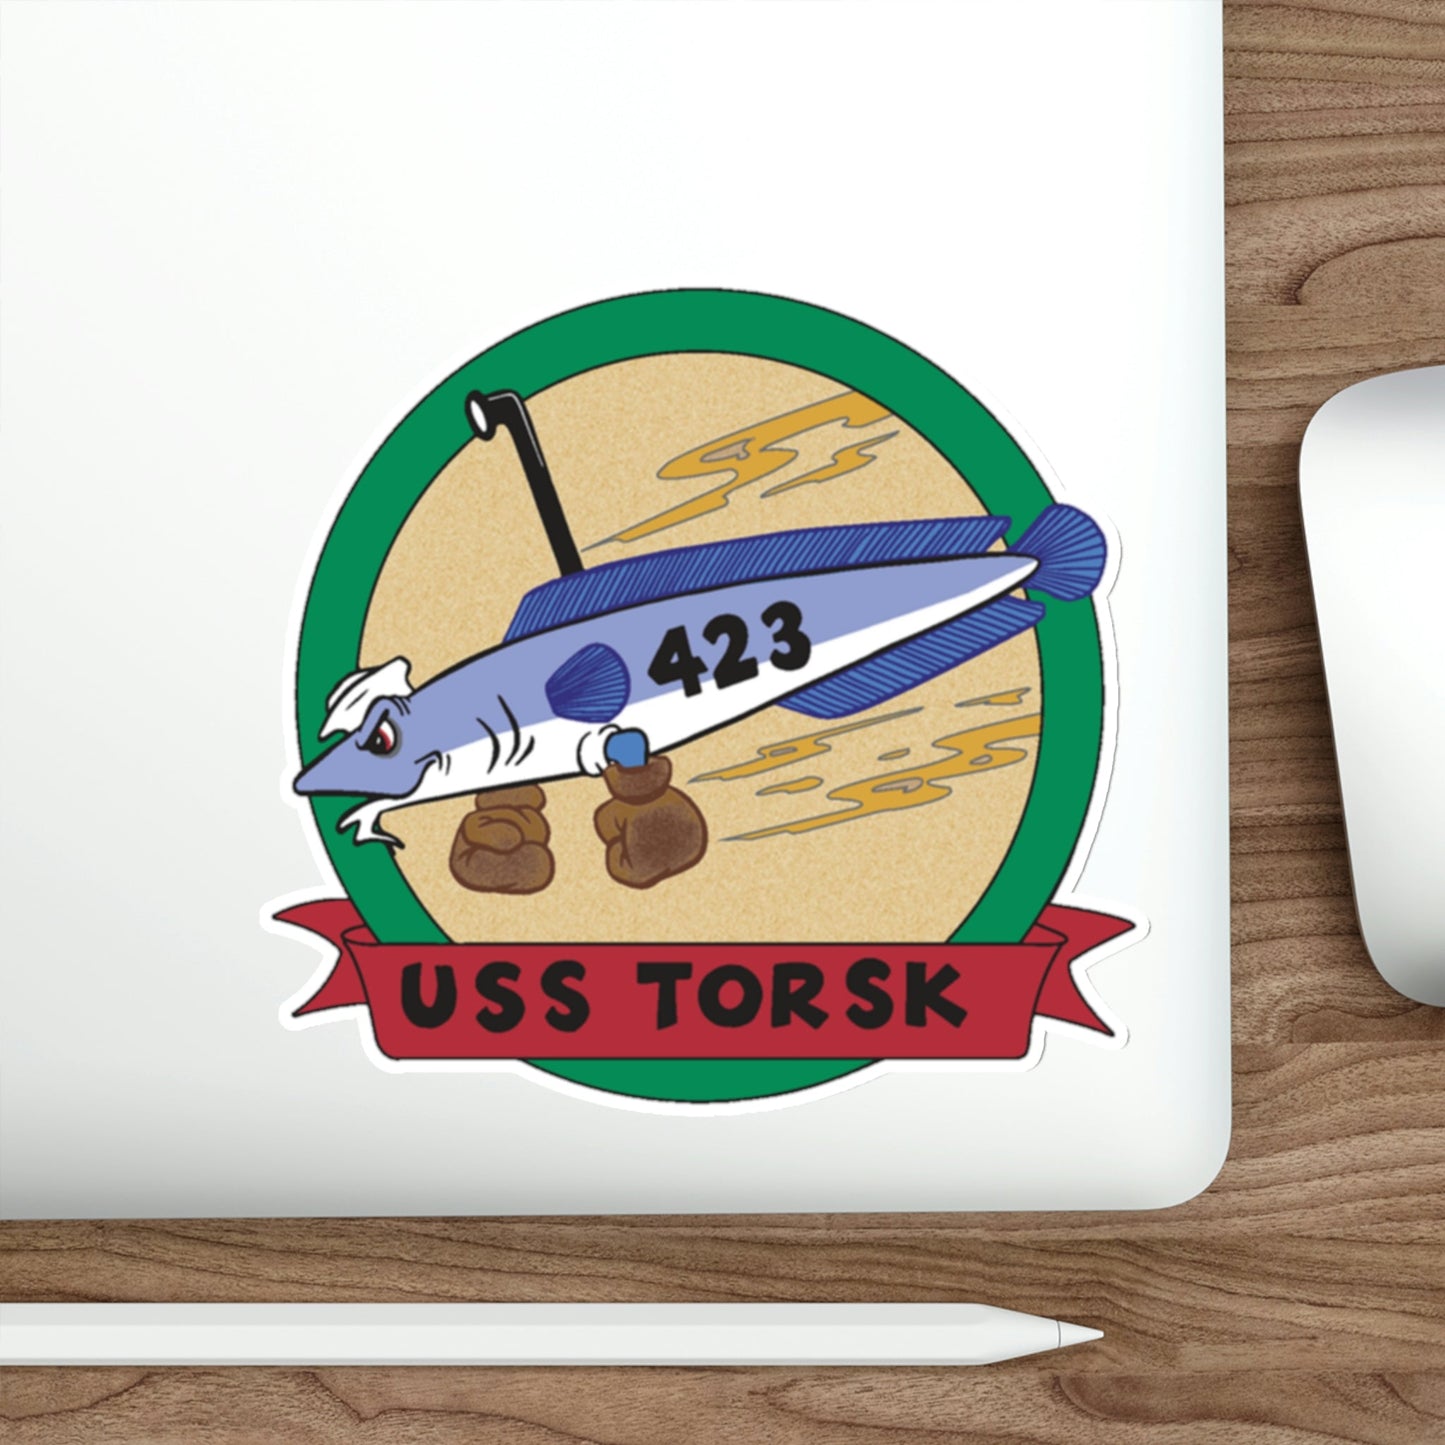 USS TORSK SS 423 (U.S. Navy) STICKER Vinyl Die-Cut Decal-The Sticker Space